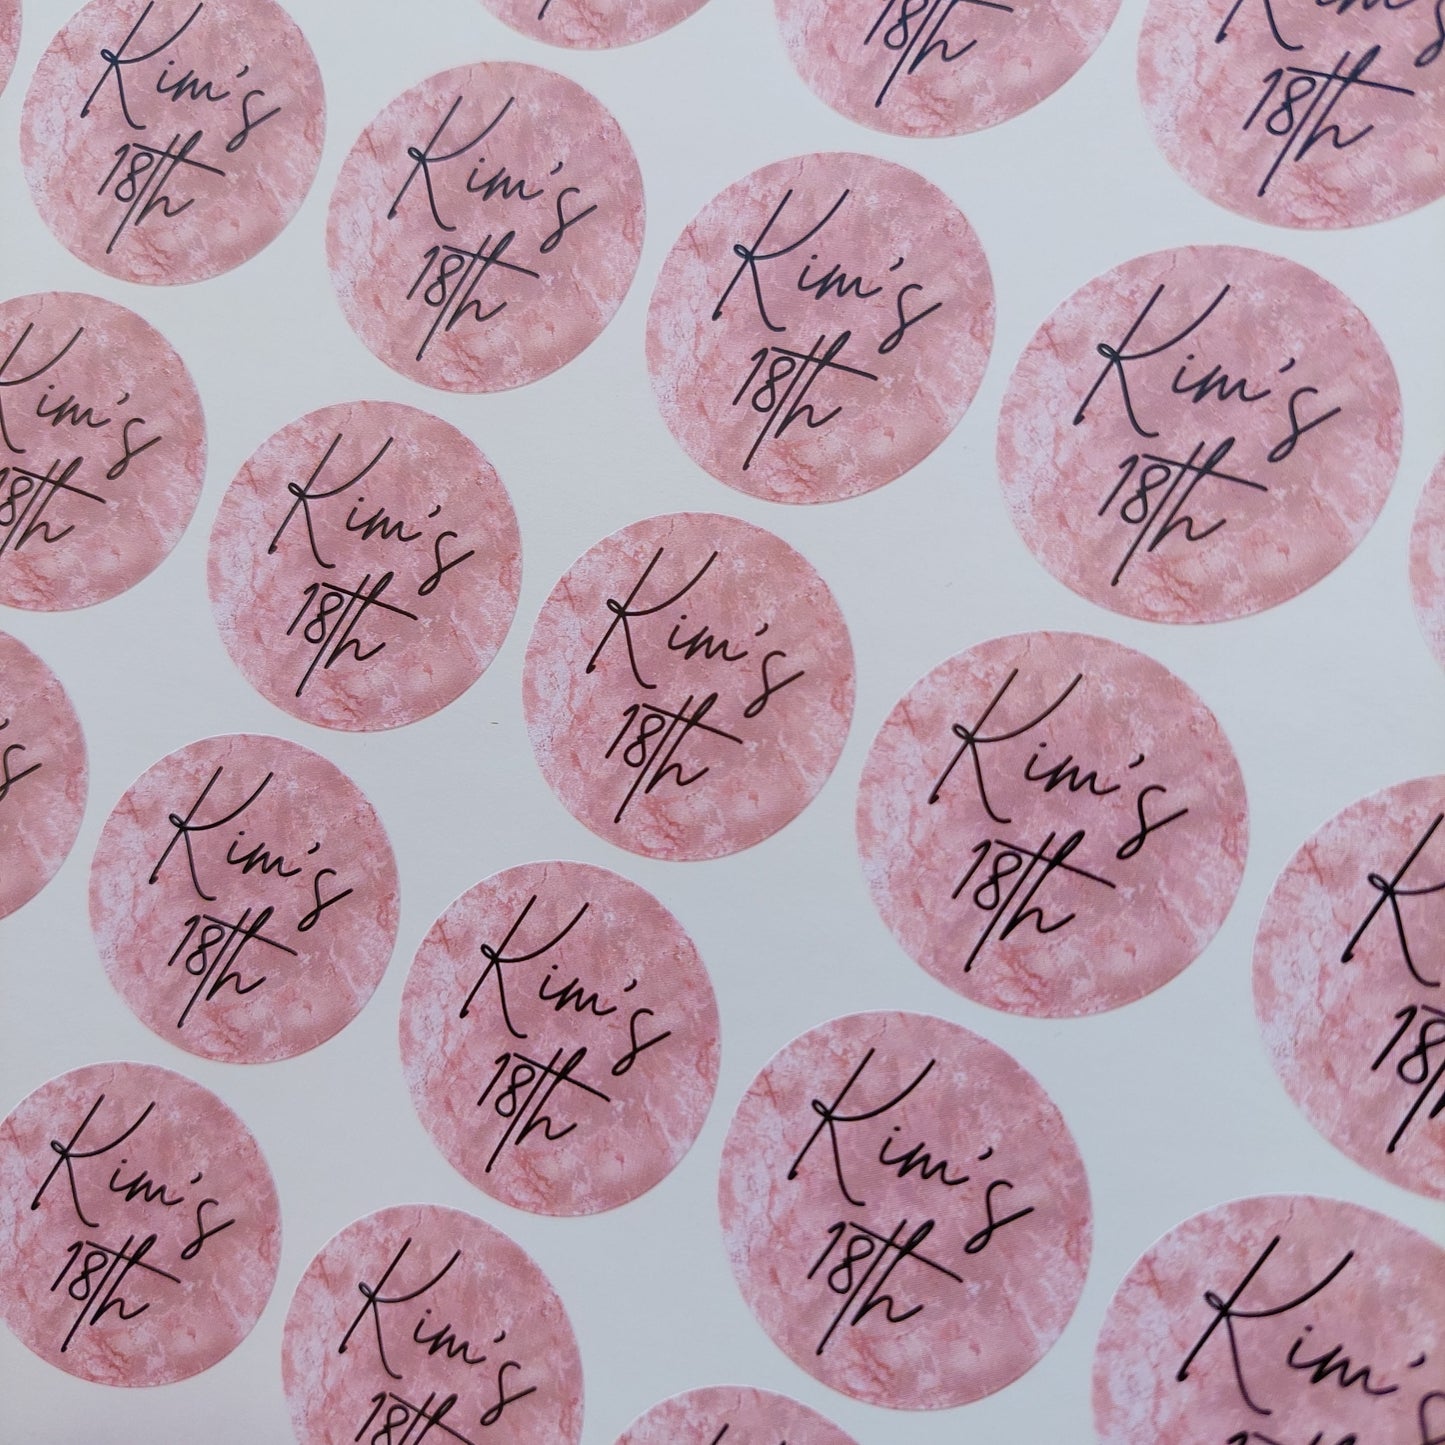 Blush Pink Birthday Stickers | Sticker Sheet 45mm Circles | Party Stickers | Circle Stickers | Sticker Sheet